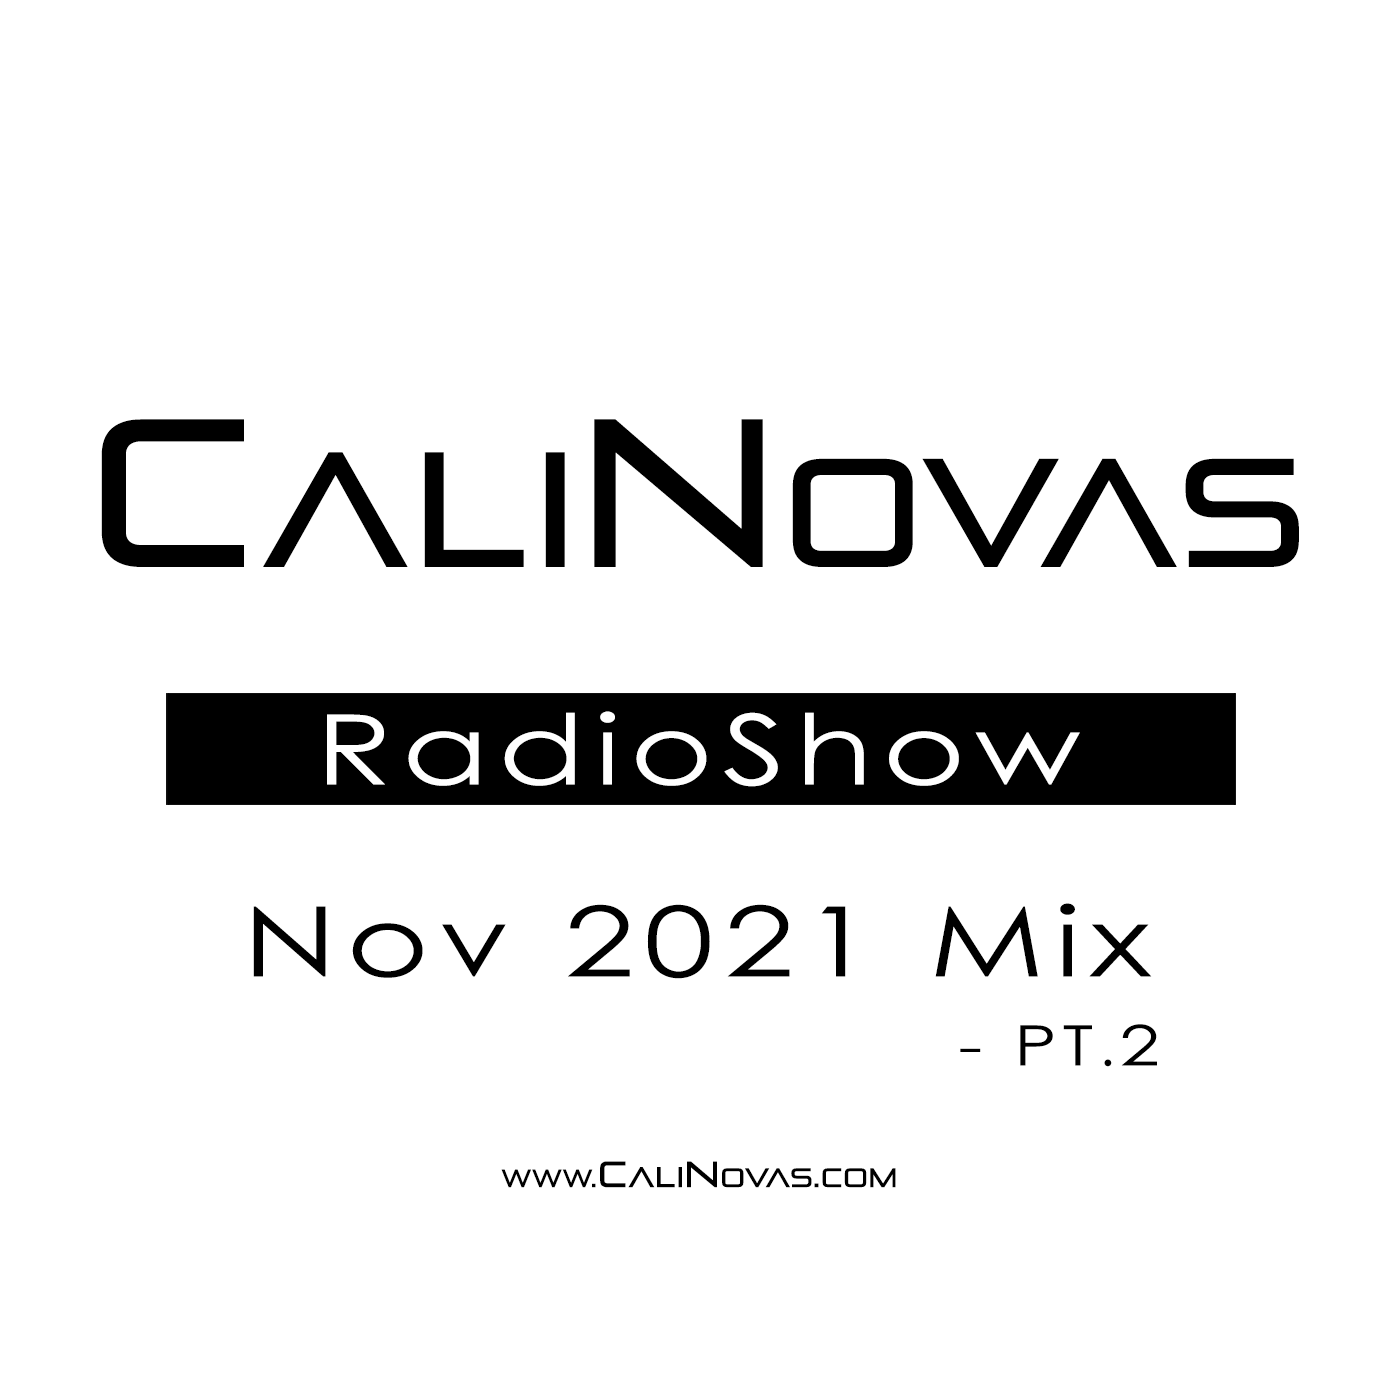 CaliNovas Radio Show - November 2021 Mix, Pt. 2